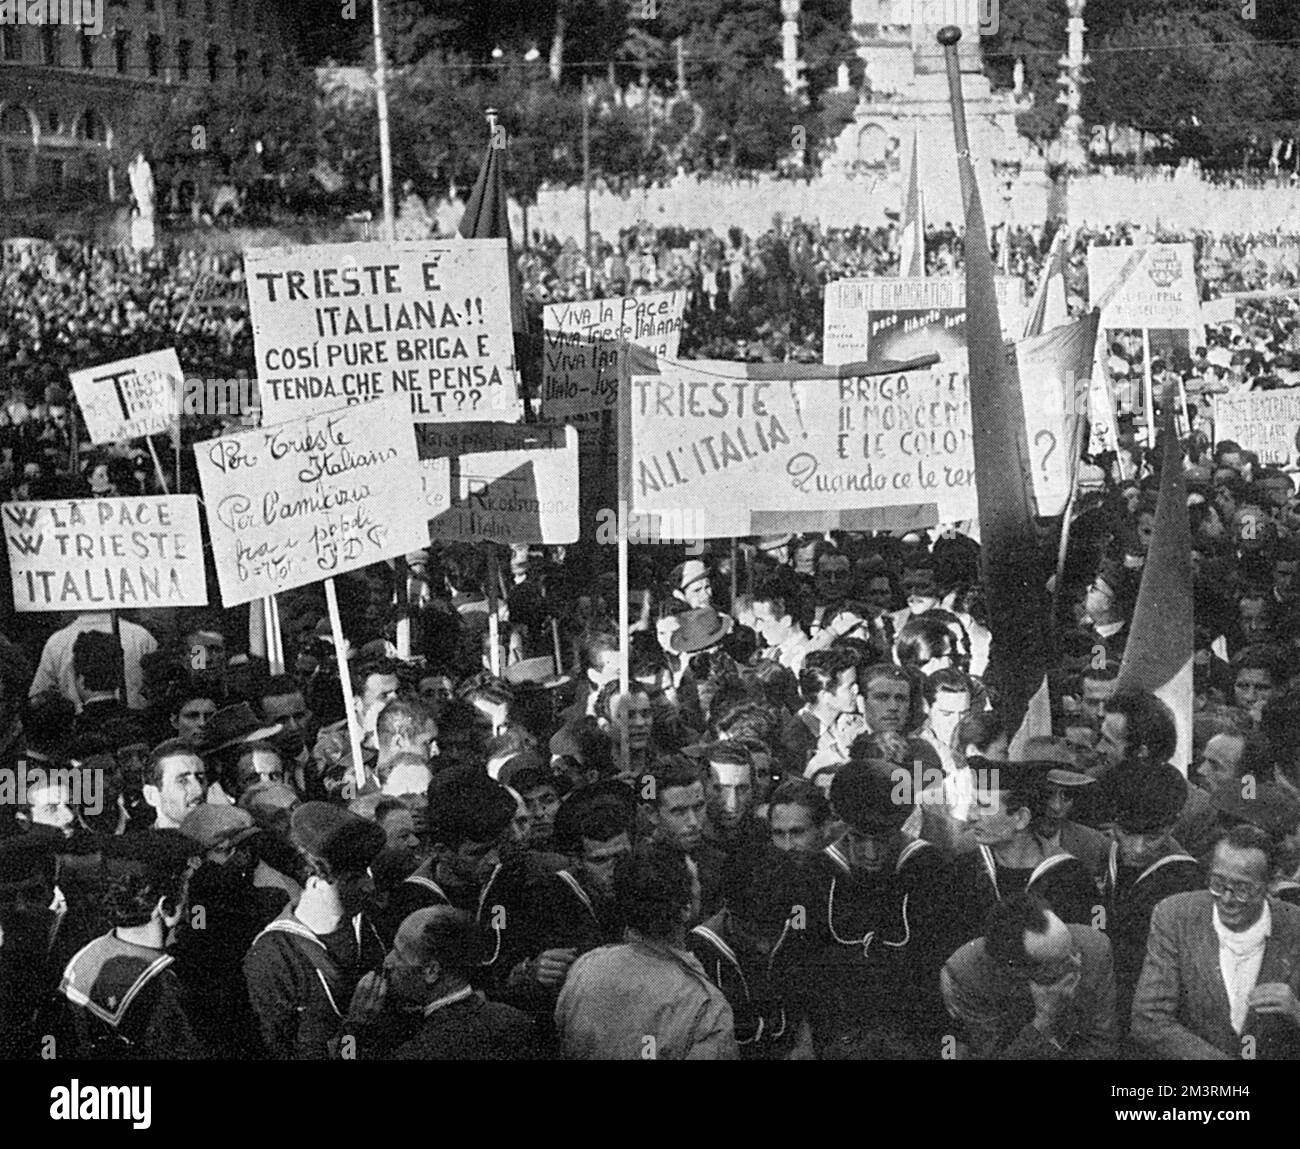 Einige der Anhänger der extremen Linken, die Togliatti hören wollten. Datum: 1948 Stockfoto